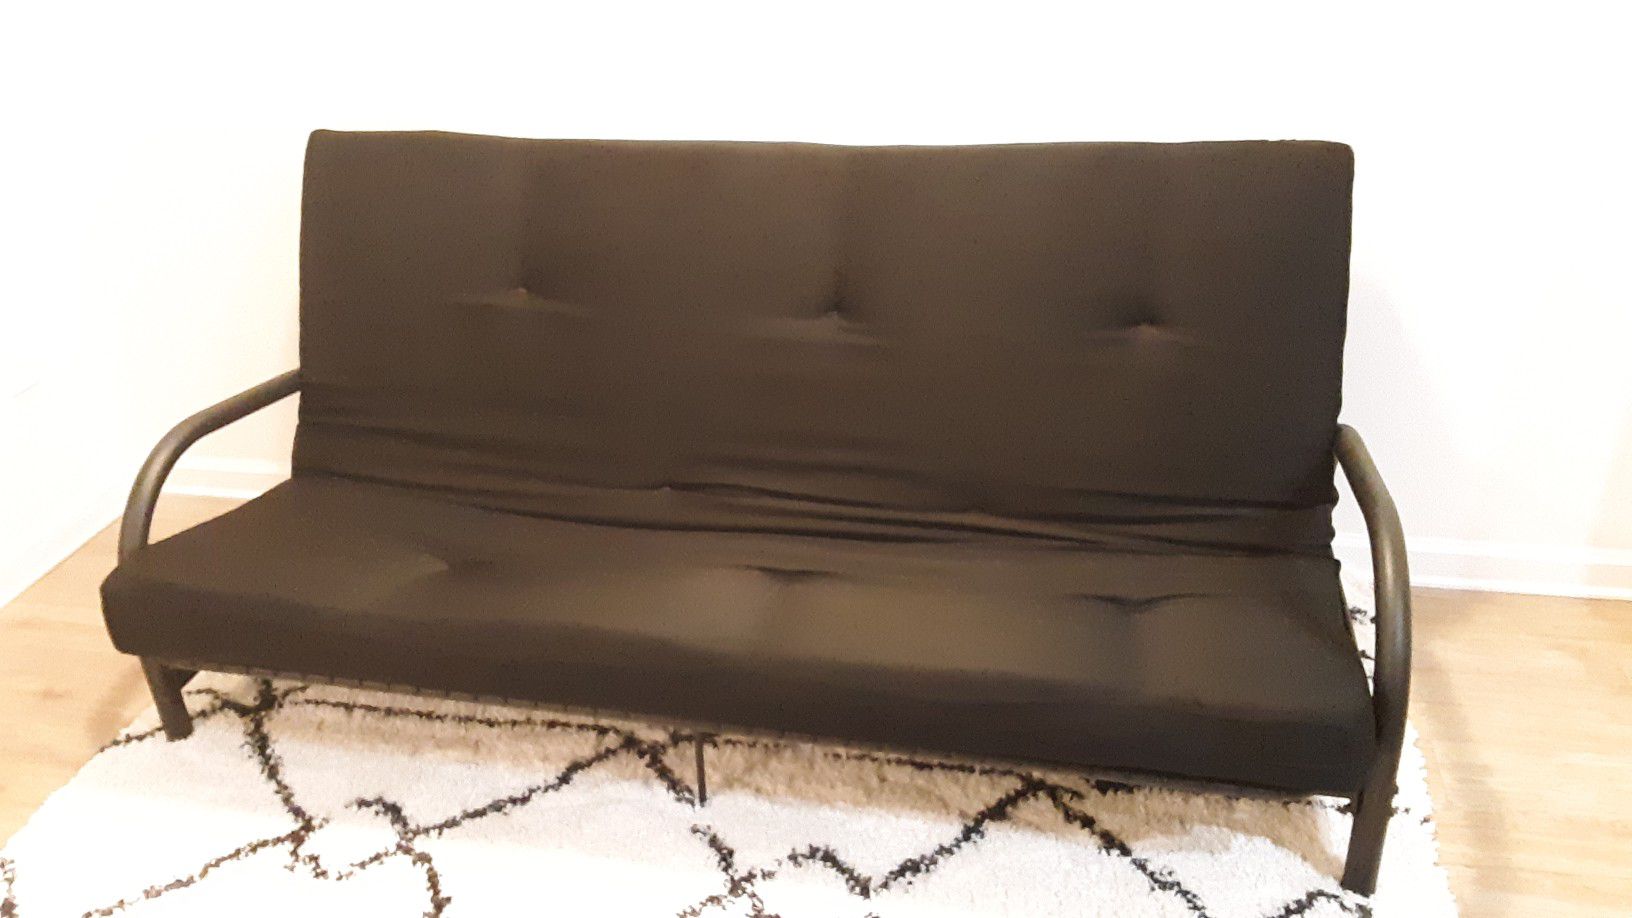 Futon with mattress